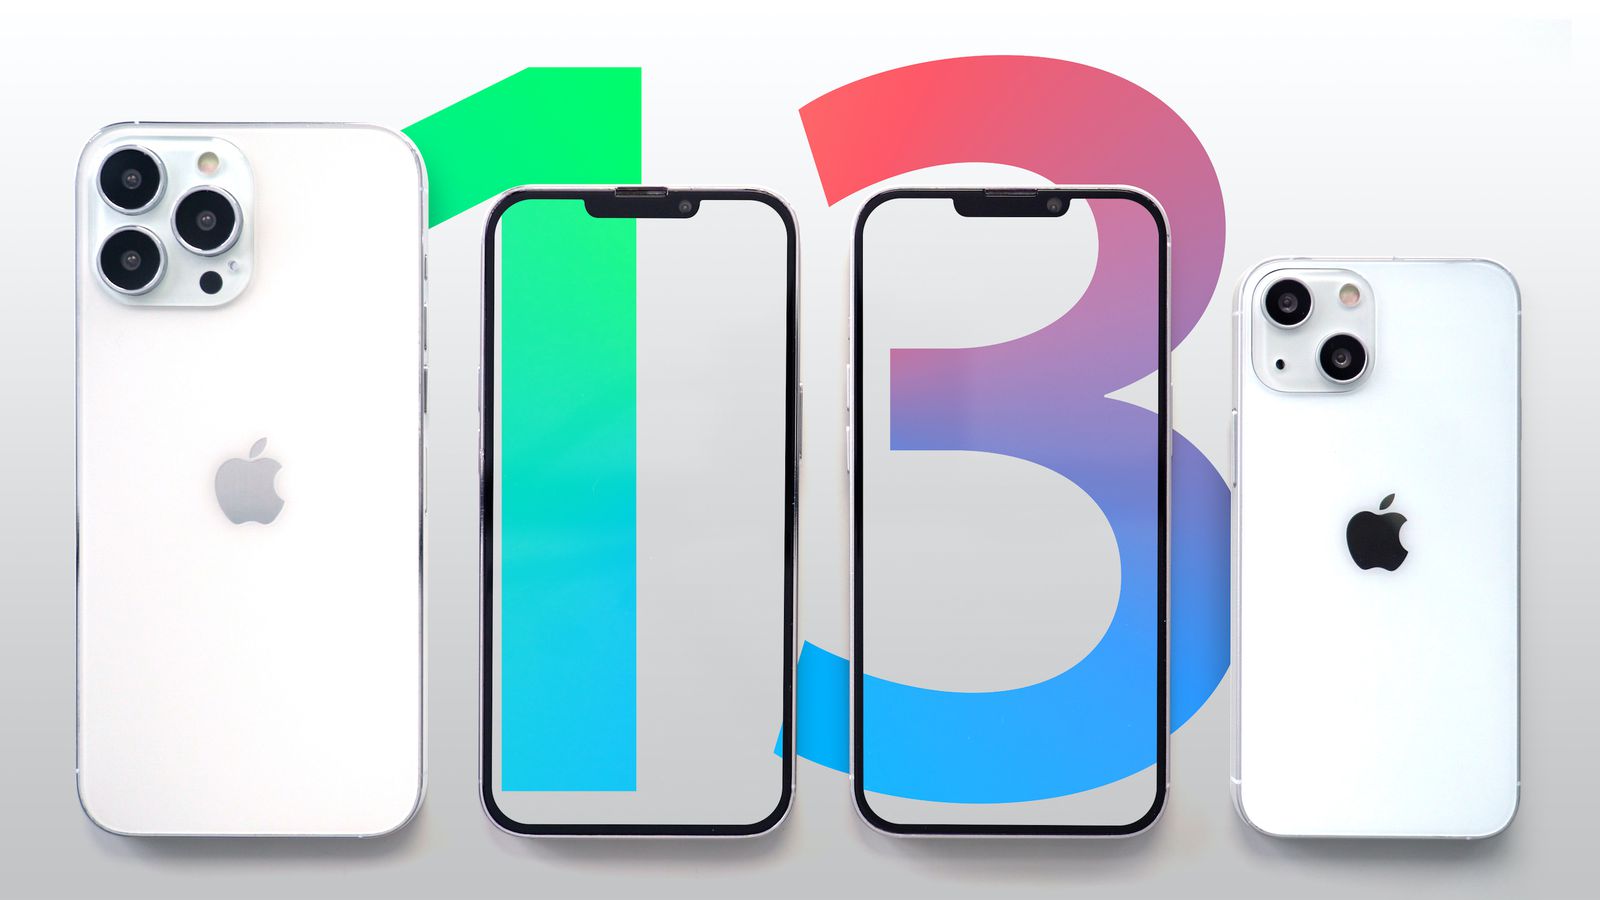 iPhone 13: Sự ra mắt của iPhone 13 đã khiến người dùng trên khắp thế giới náo nức chờ đợi. Bạn sẽ không muốn bỏ lỡ cơ hội để xem hình ảnh chi tiết của chiếc điện thoại thông minh tiên tiến này. Với hình ảnh sống động và hiển thị màn hình đẹp, chắc chắn iPhone 13 sẽ là cỗ máy thông minh hoàn hảo cho các tín đồ công nghệ.